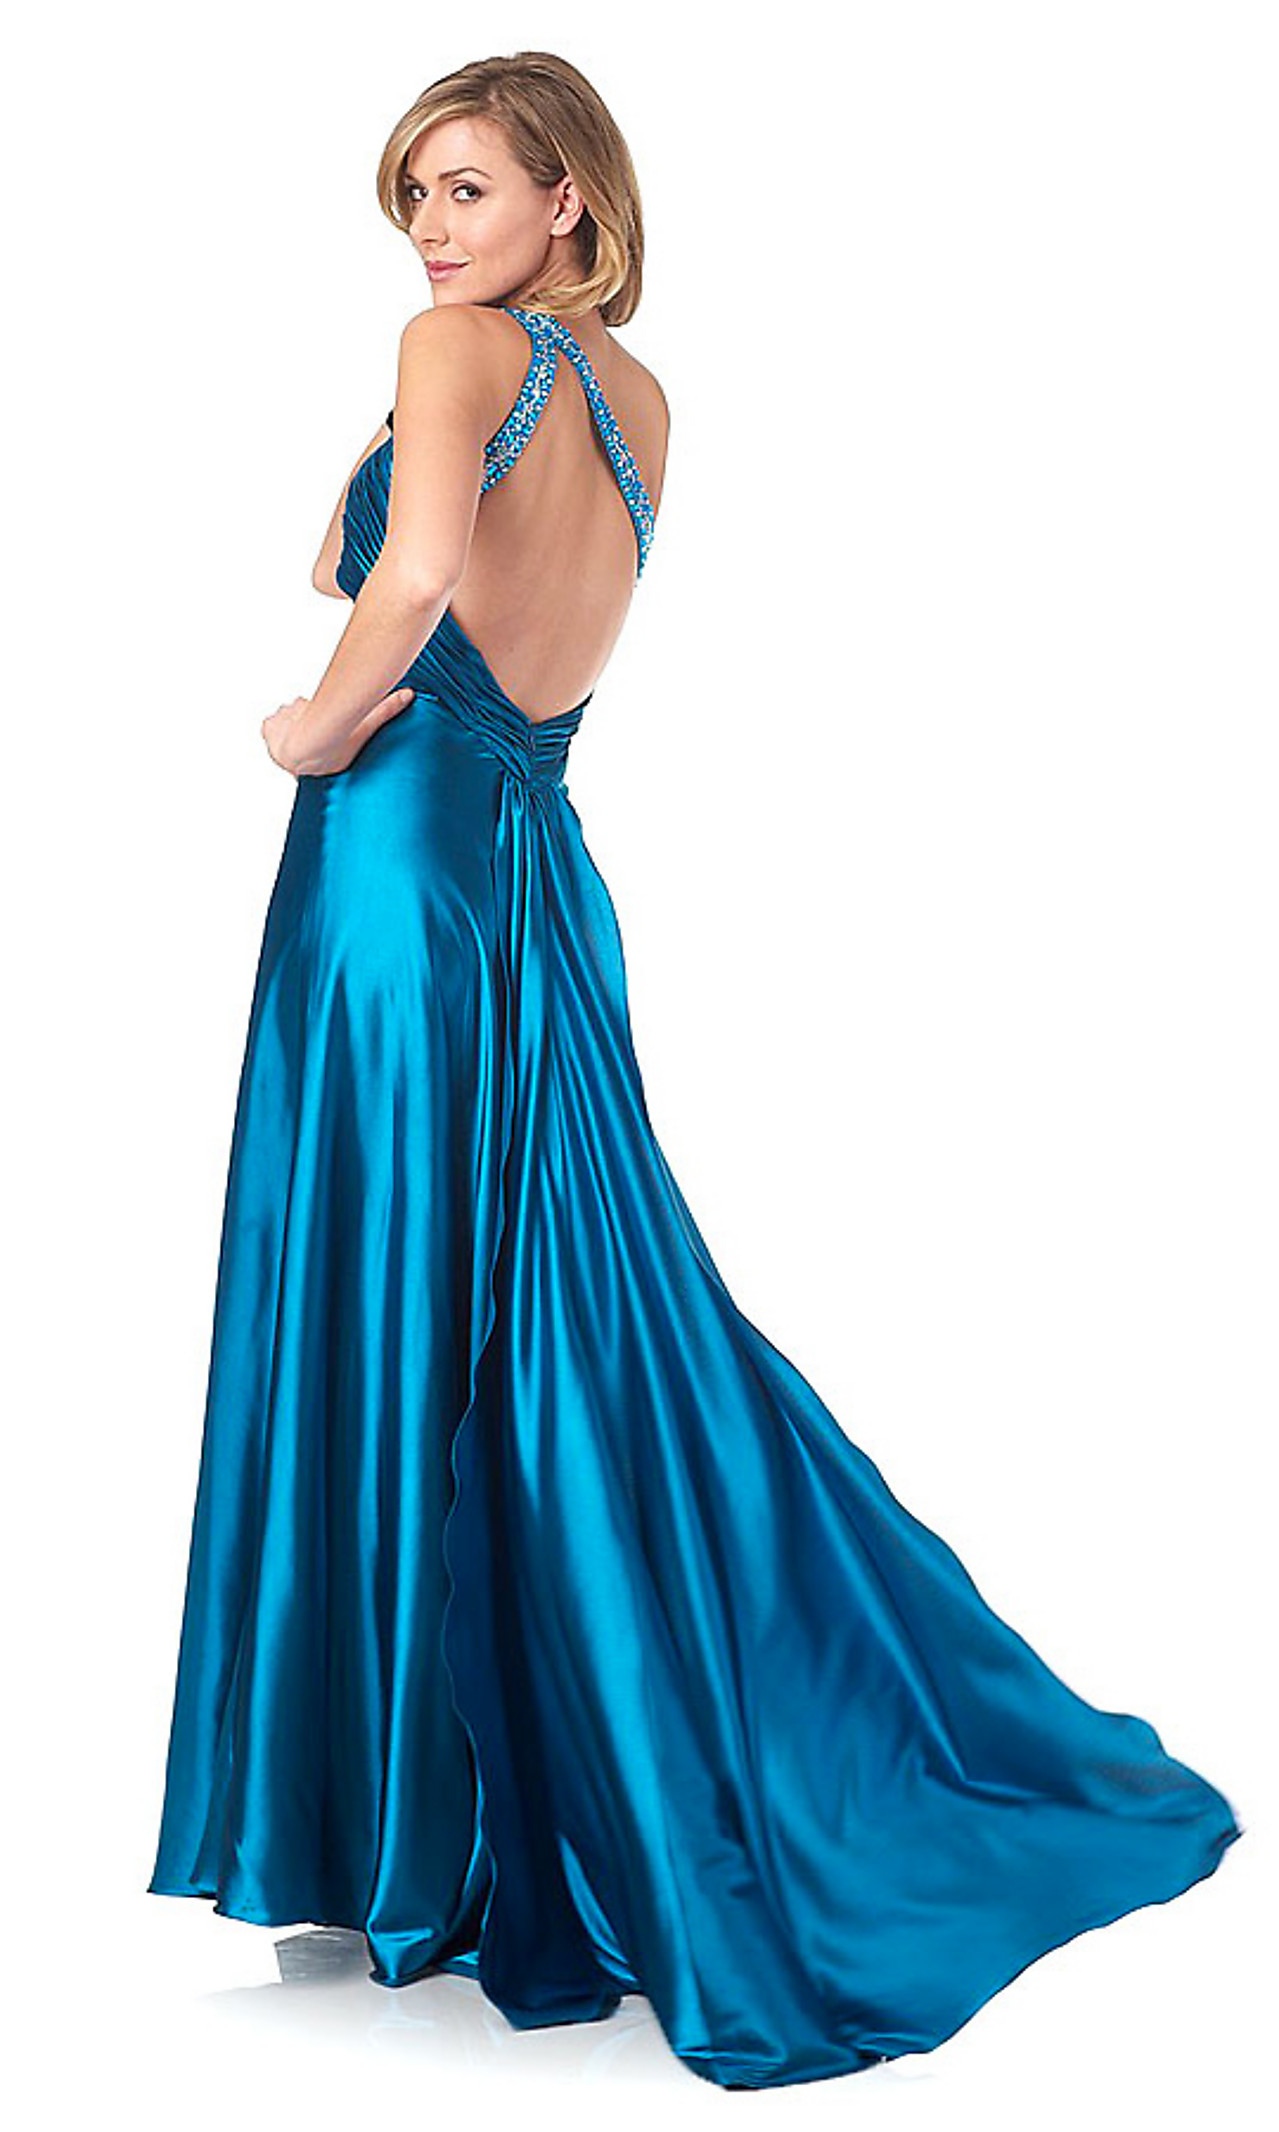 豪華なワンショルダーフロア長エンパイアスタイルアイスブルー弾性サテンイブニングドレス